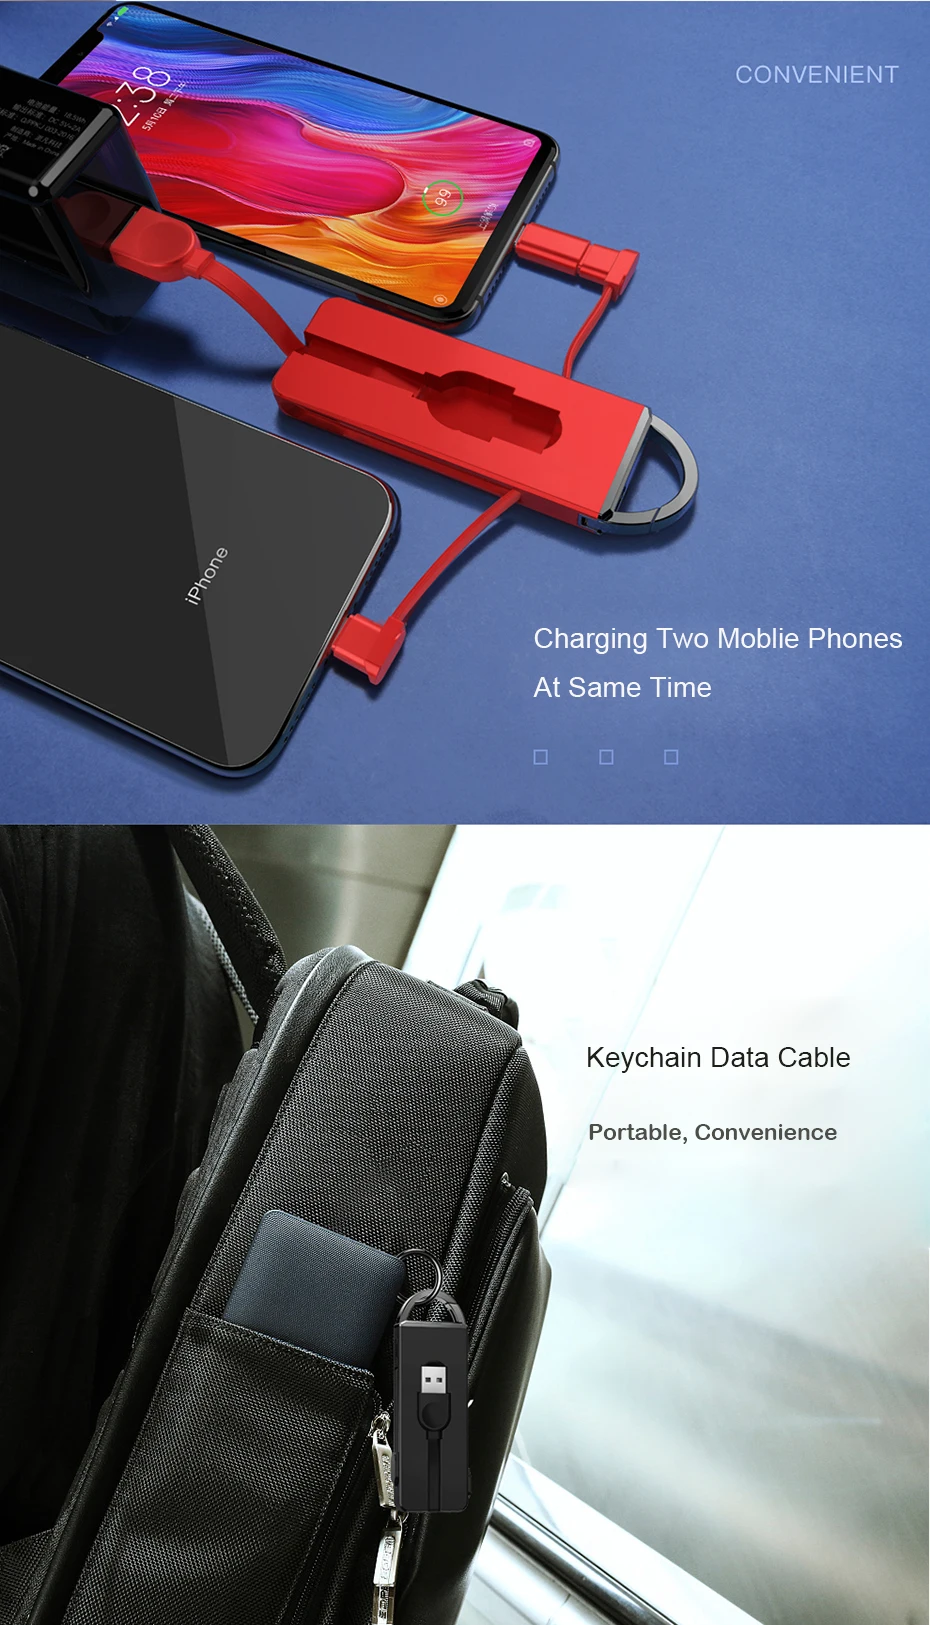 OATSBASF折叠钥匙扣3合1充电Micro USB线适用于iPhone Type c Android